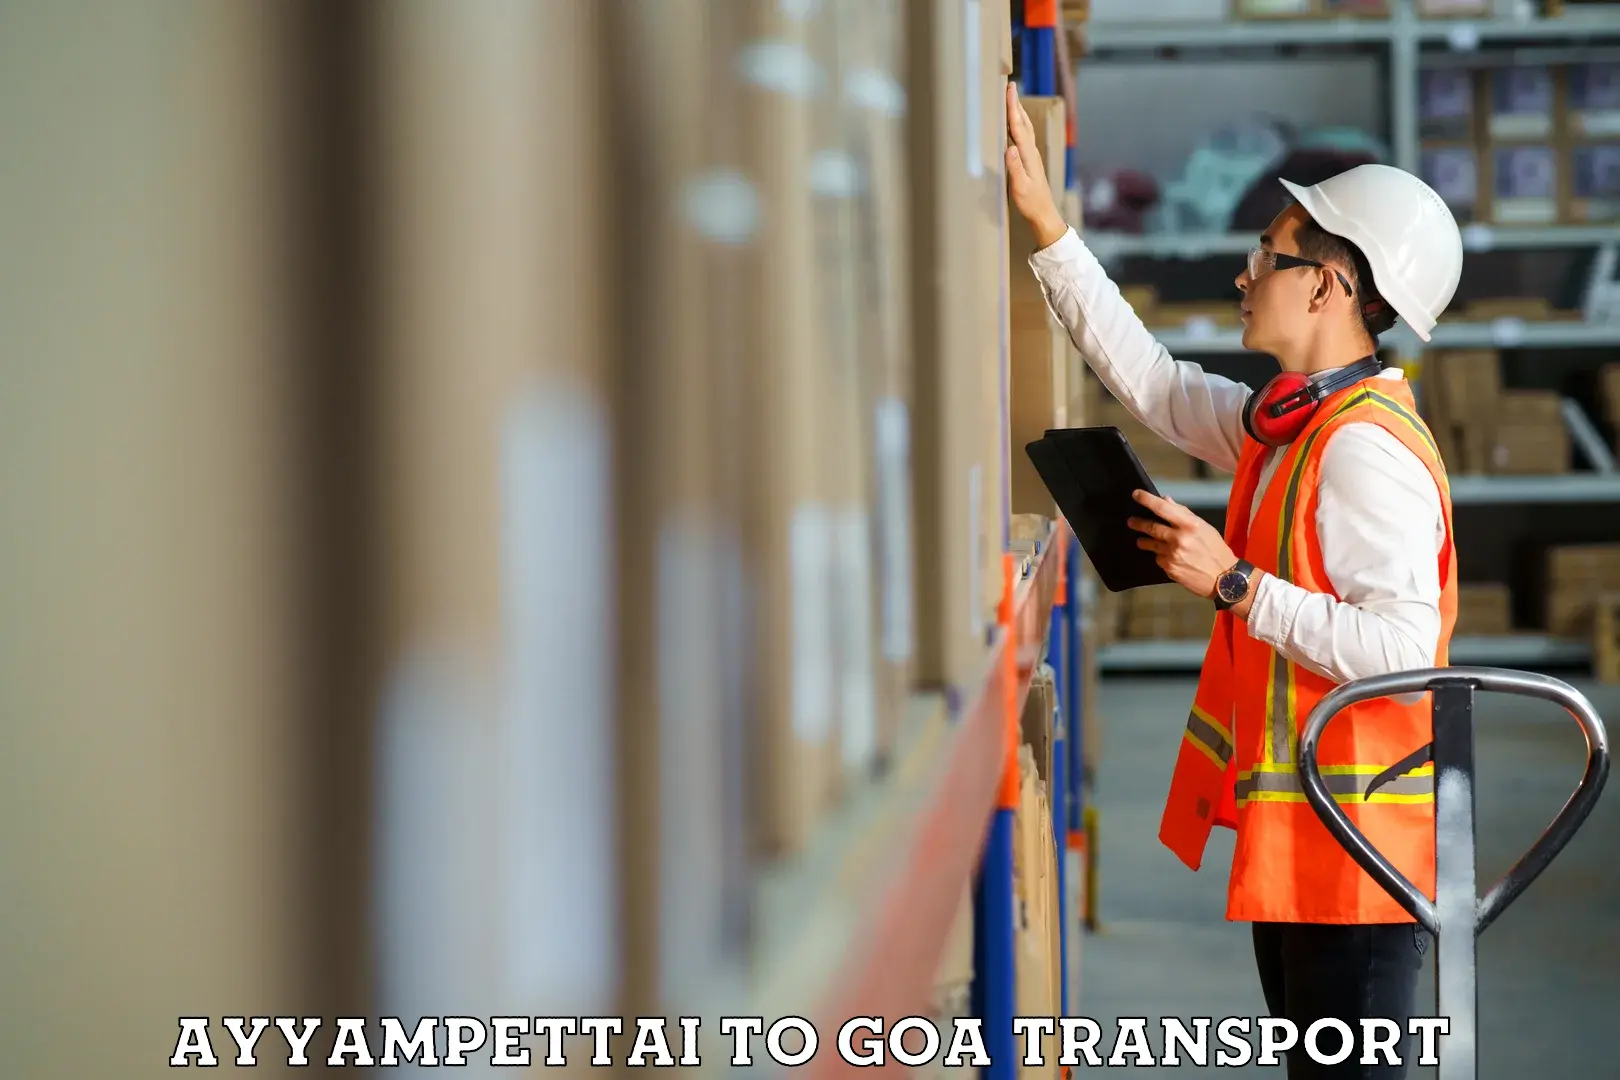 Express transport services Ayyampettai to Goa University